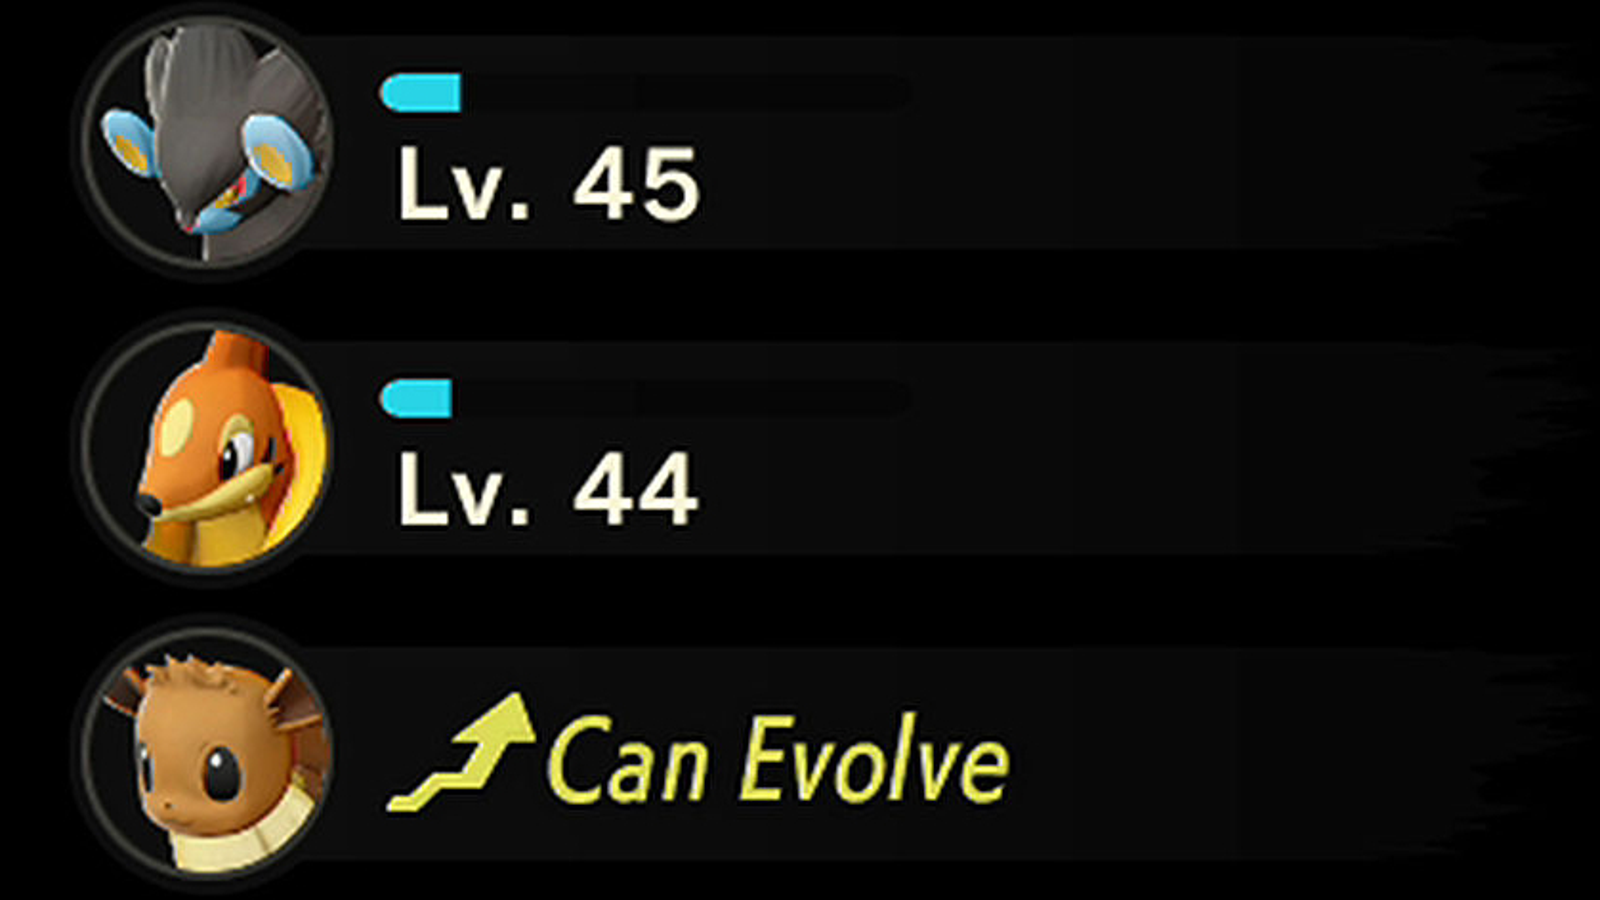 Pokémon Legends: Arceus - evoluções de Eevee - Como evoluir Eevee